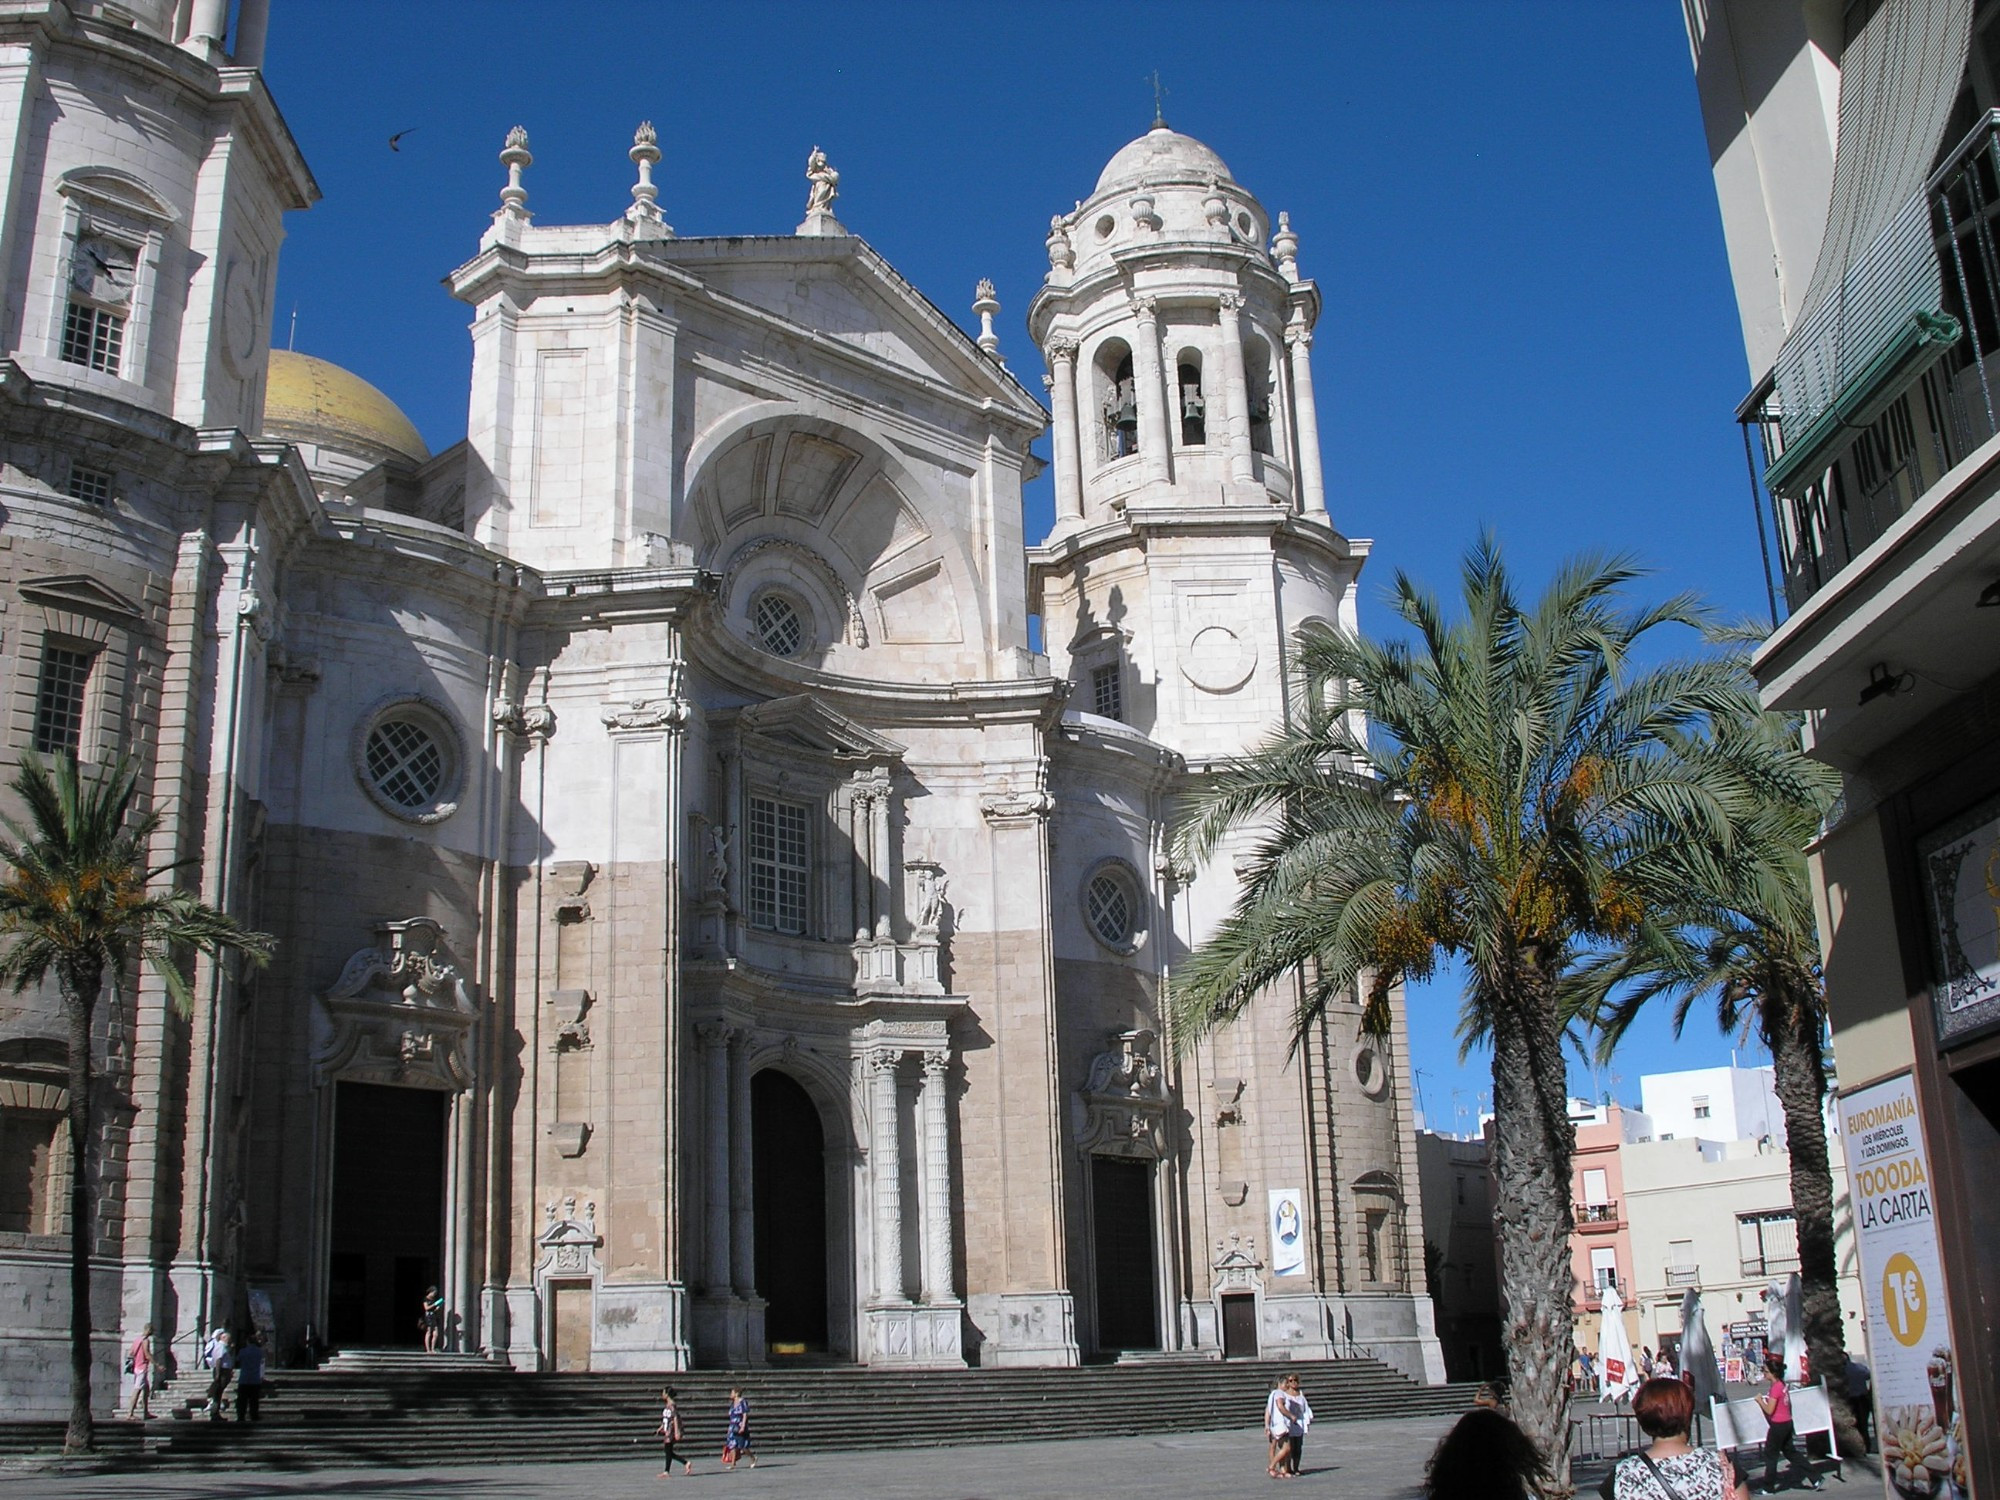 Catedral de la Santa Cruz, Spain